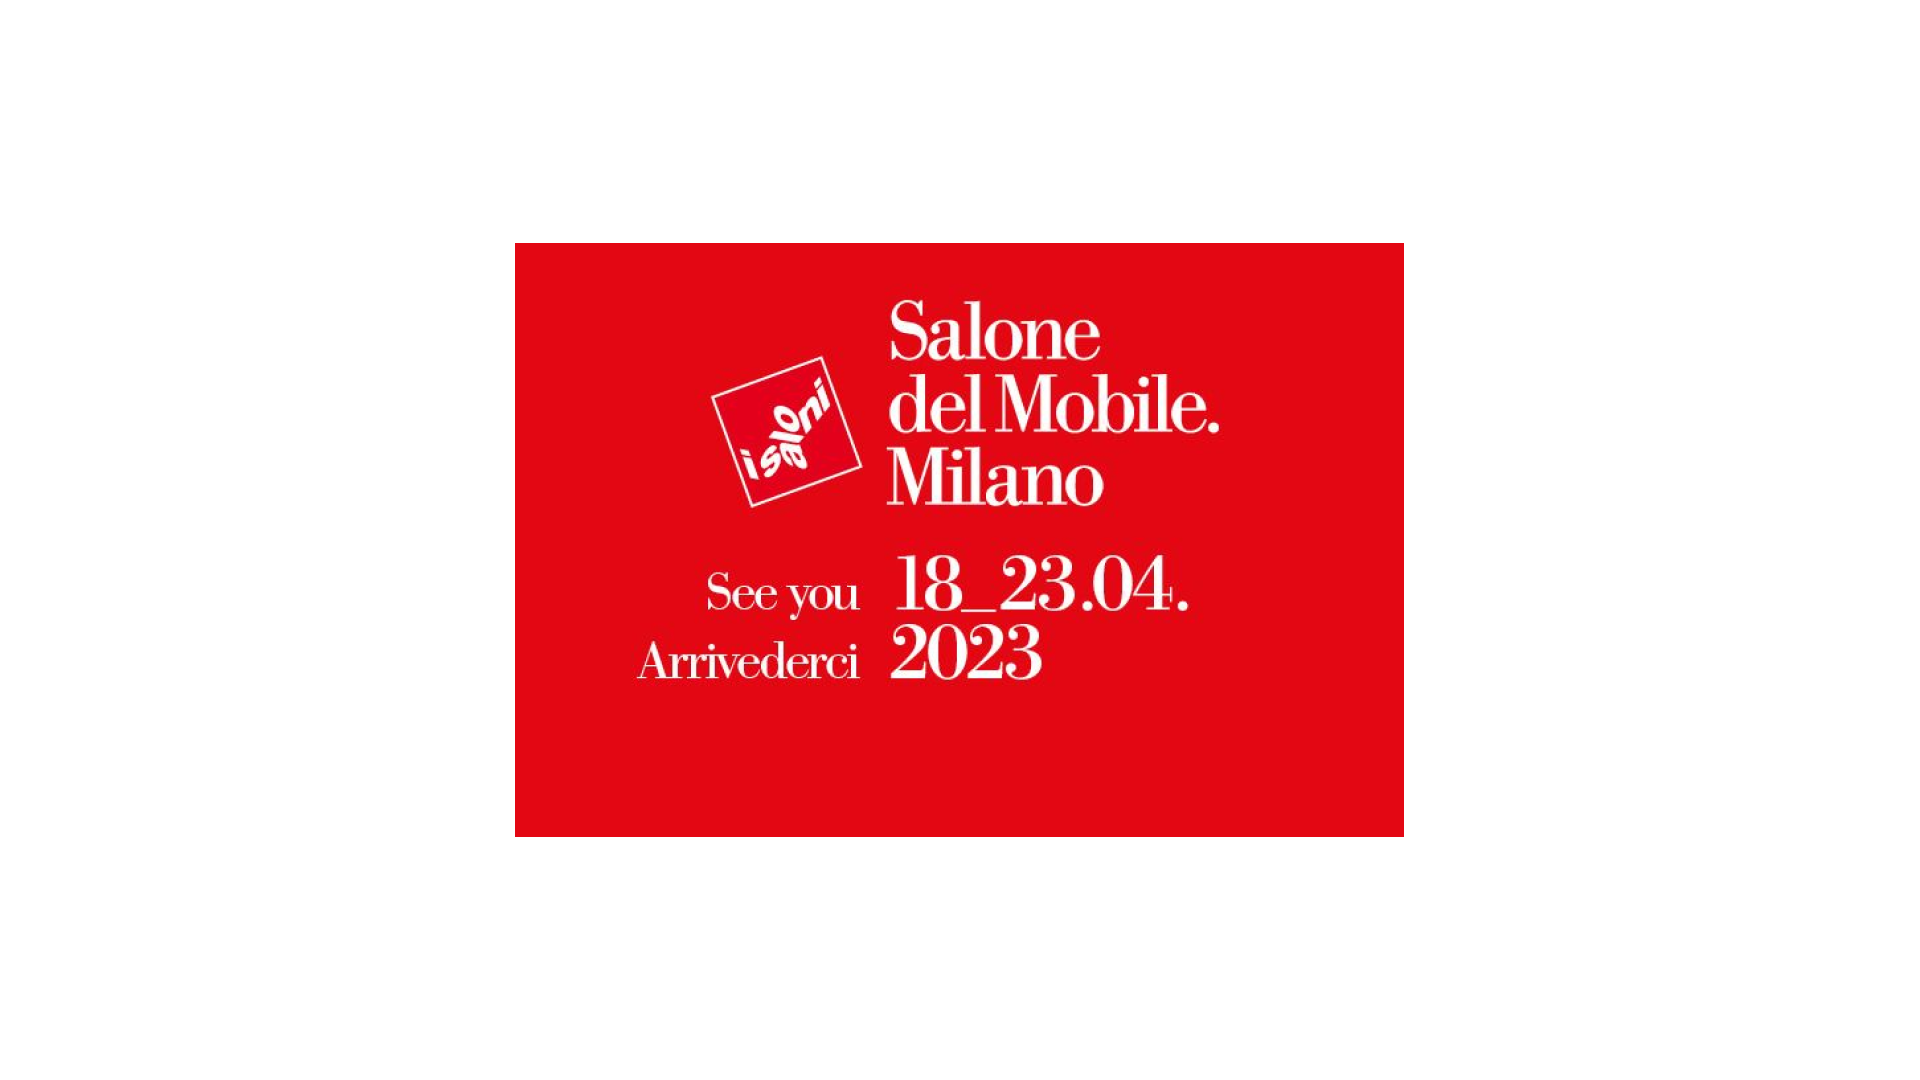 Salone del Mobile.Milano 2023 - Love That Design